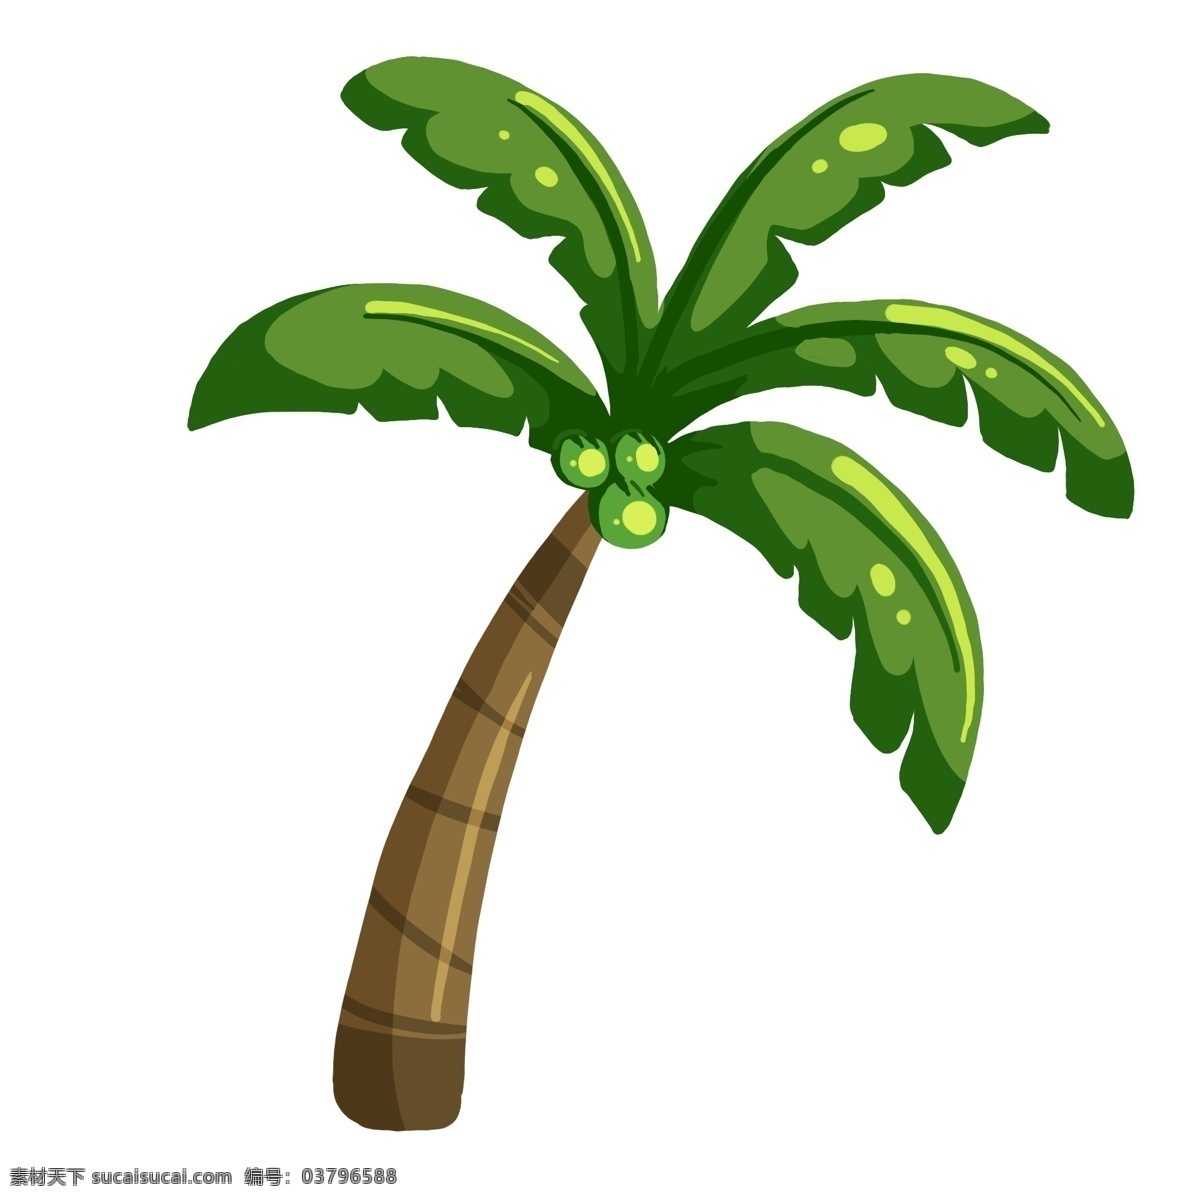 绿色 椰子树 插画 绿色的树木 植物 大树 植物插画 卡通植物插画 精美的椰子树 树木插画